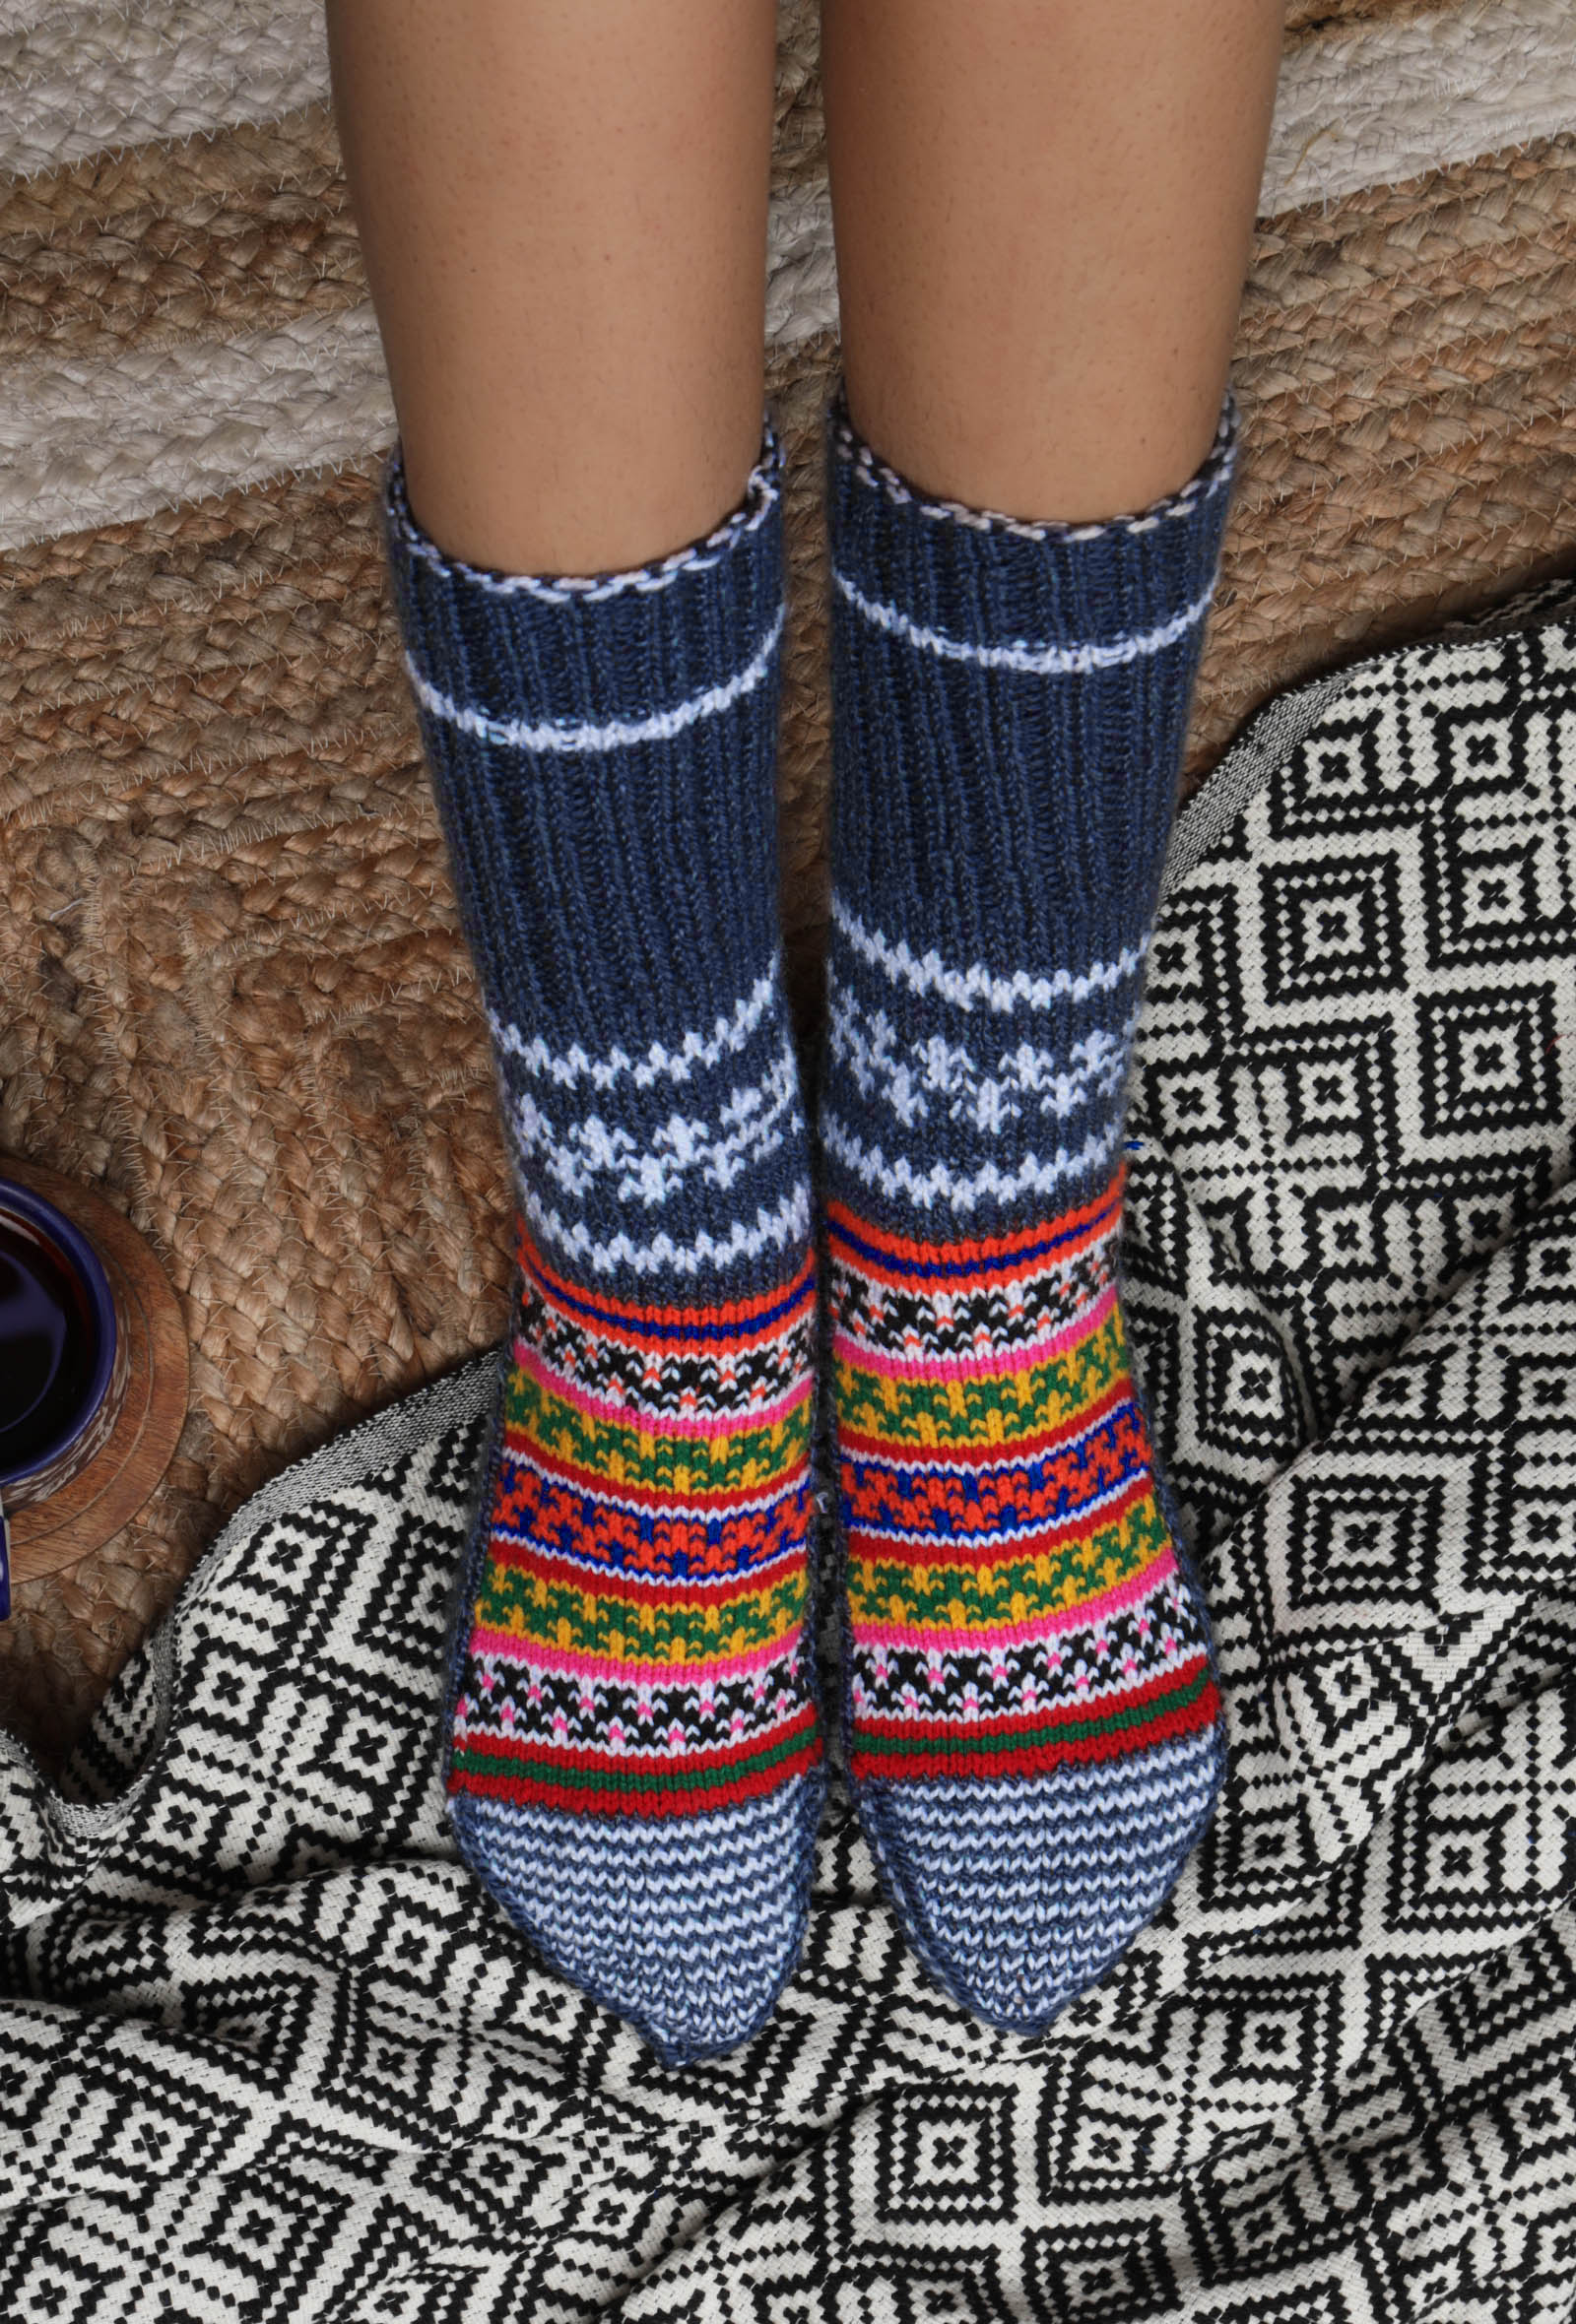 Aegean Blue & Multi Hand Knitted Woolen Winter Socks